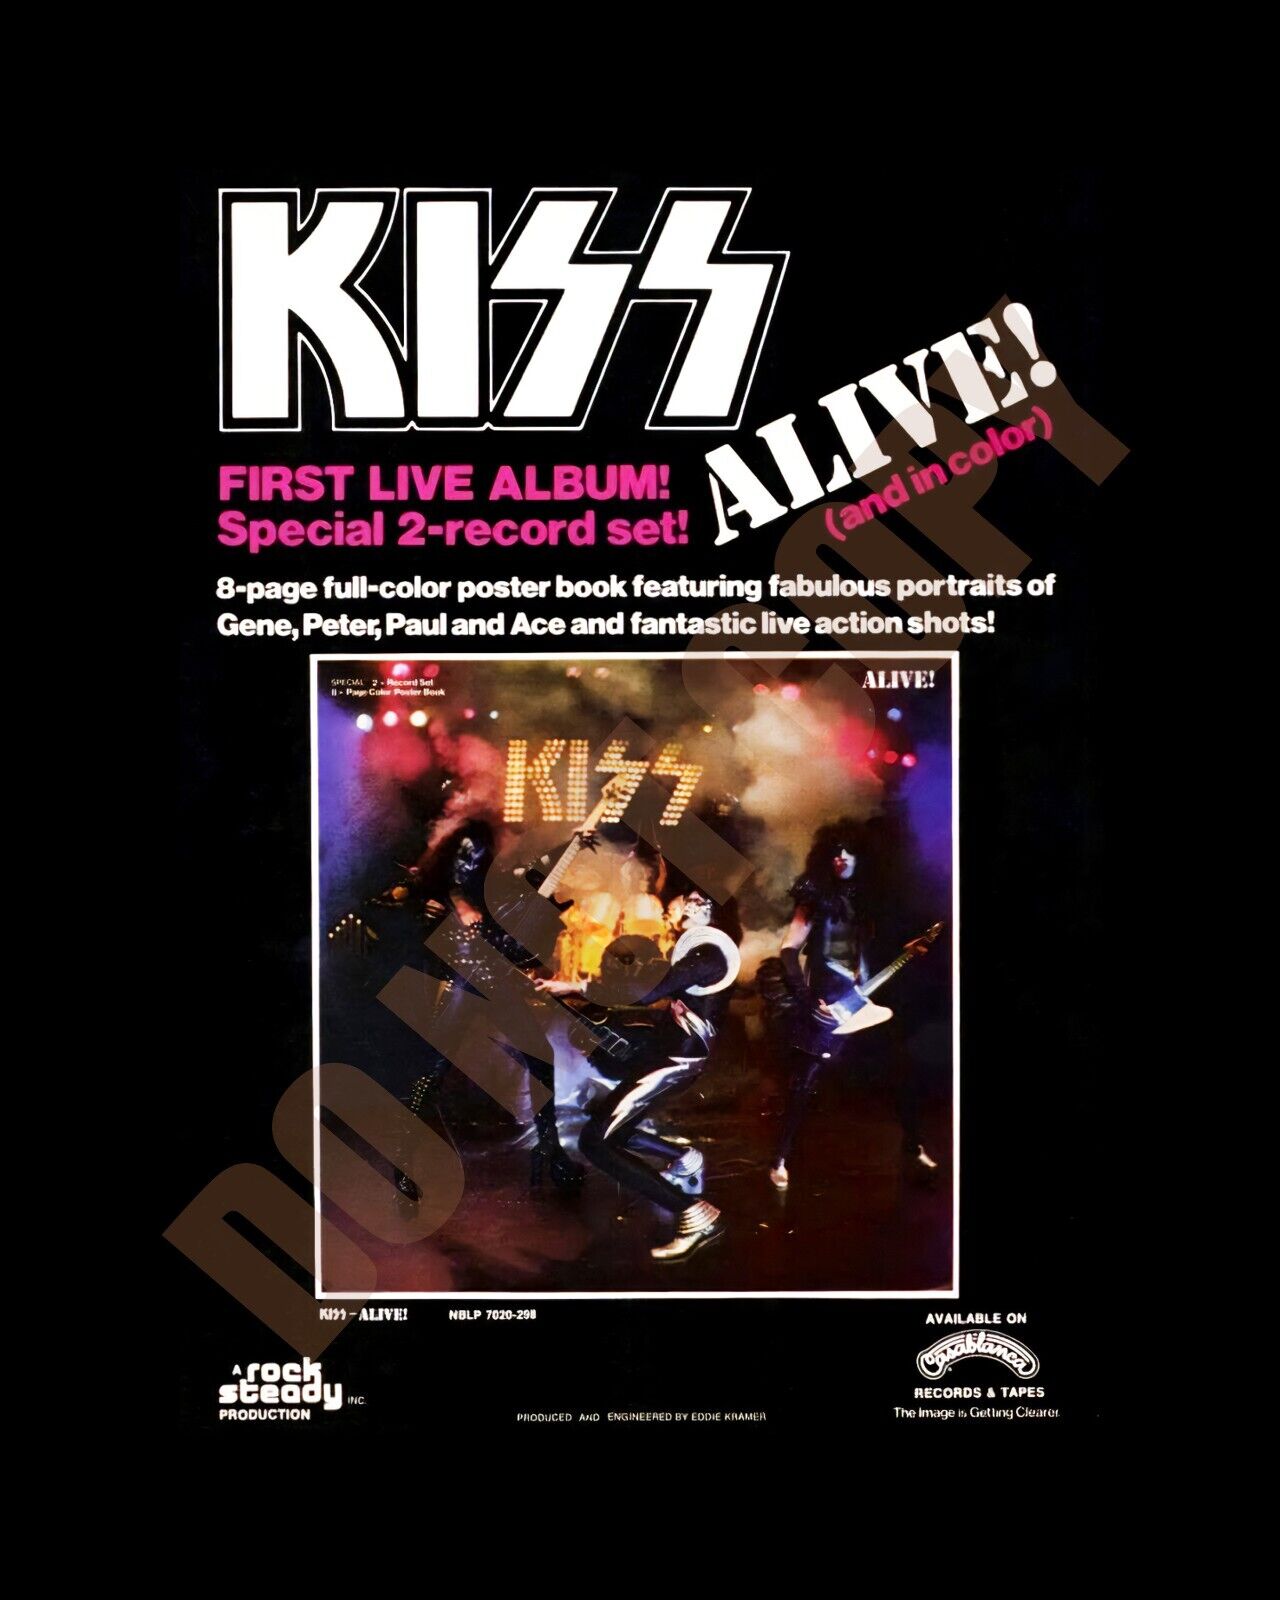 1975 KISS ALIVE Album Record Newspaper Magazine Ad Art 8x10 Photo